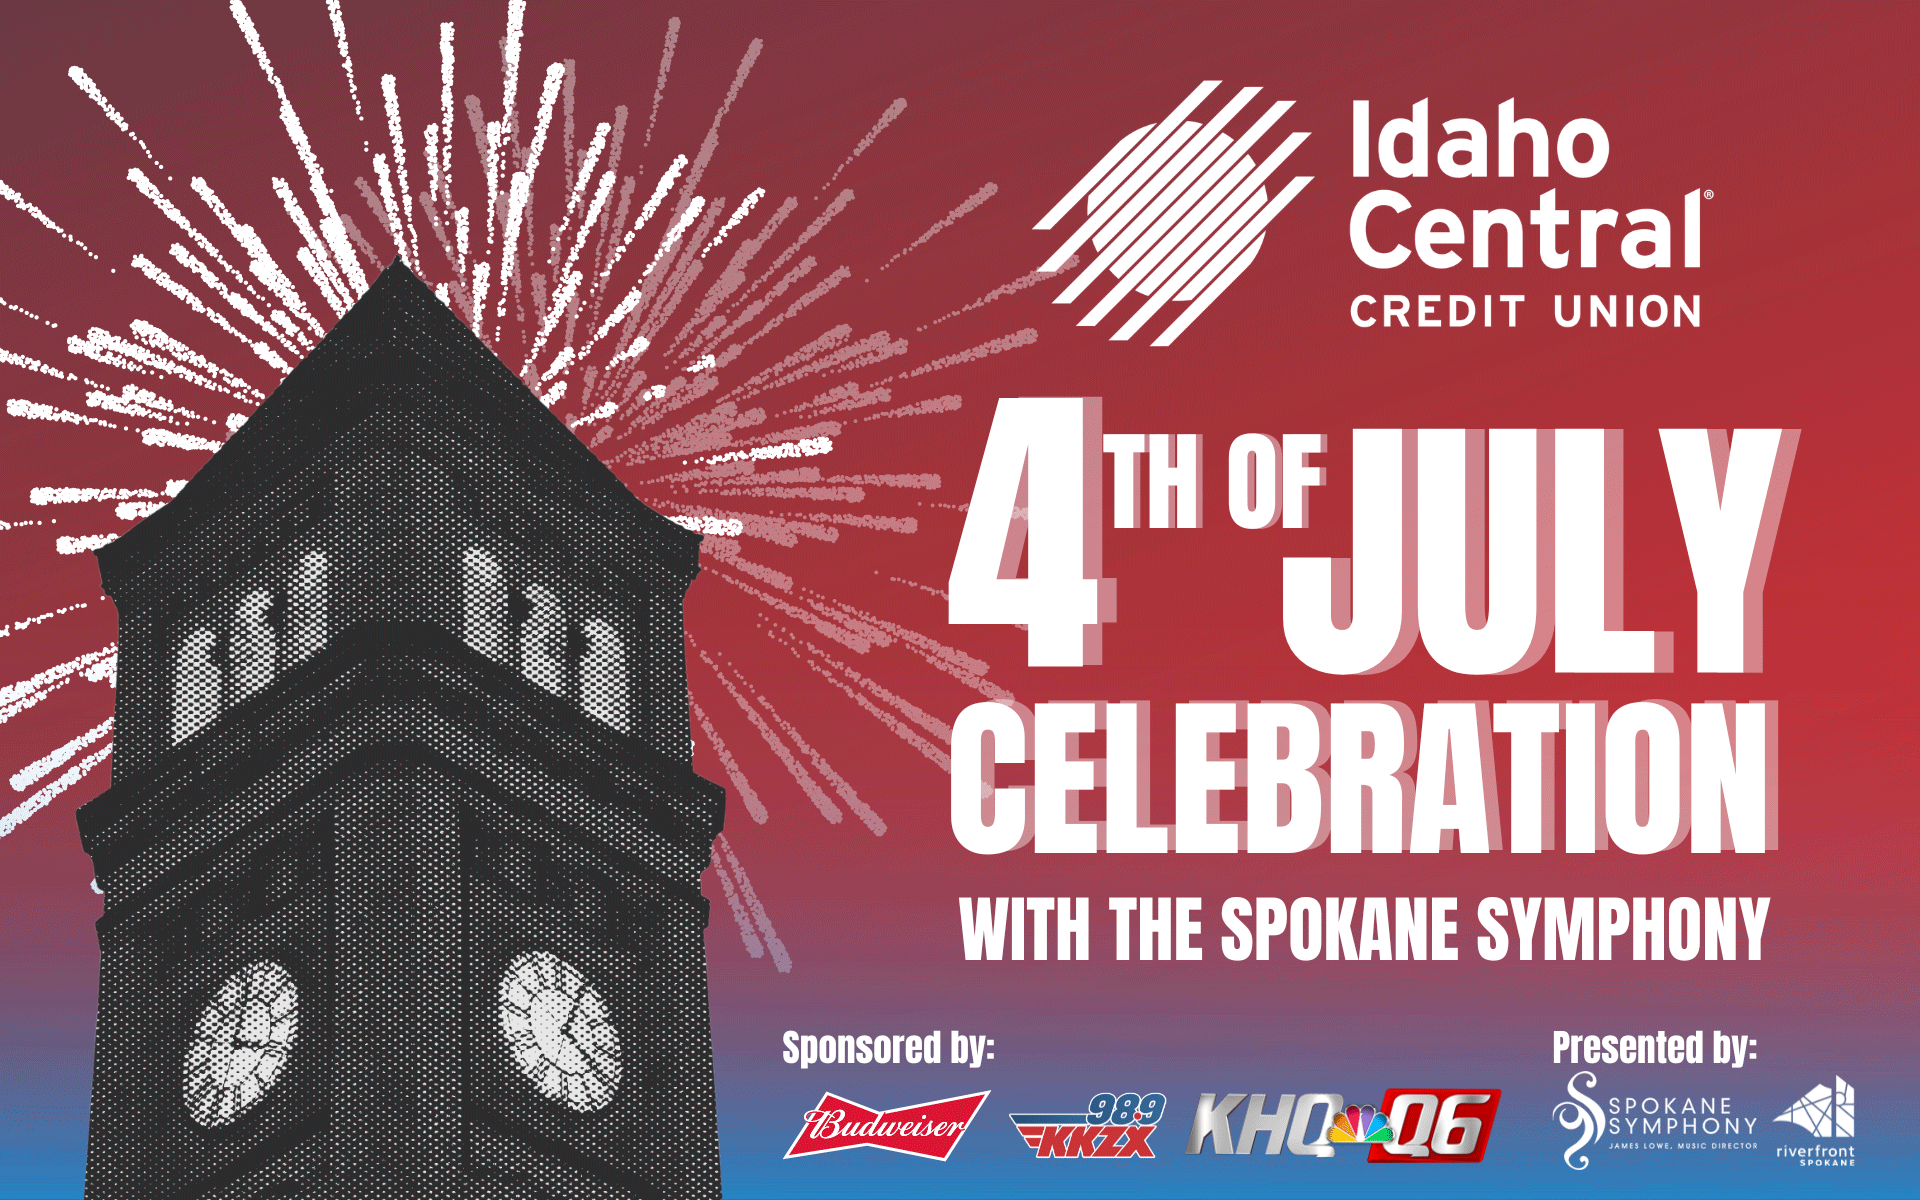 ICCU 4th of July Celebration with the Spokane Symphony City of